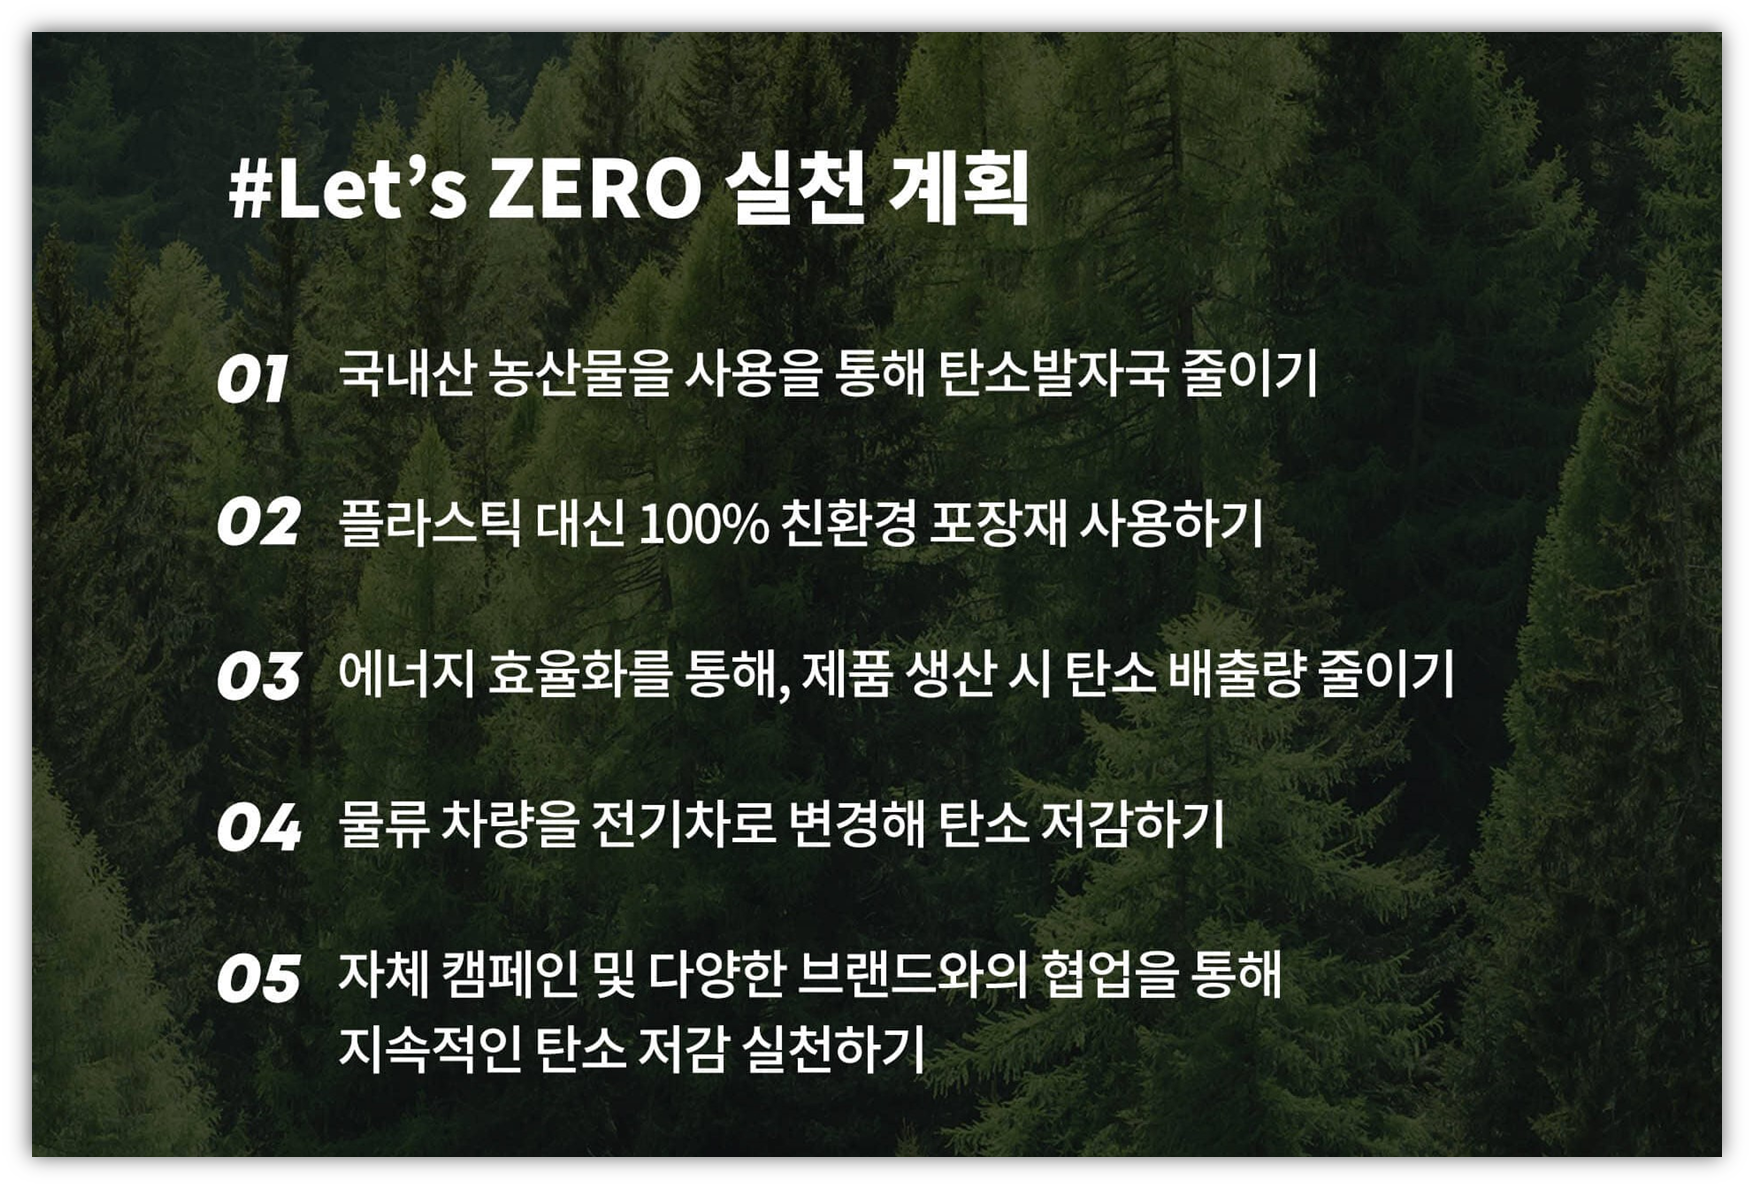 출처 : 언리미트 홈페이지 / #Let’s ZERO 실천 계획 5가지